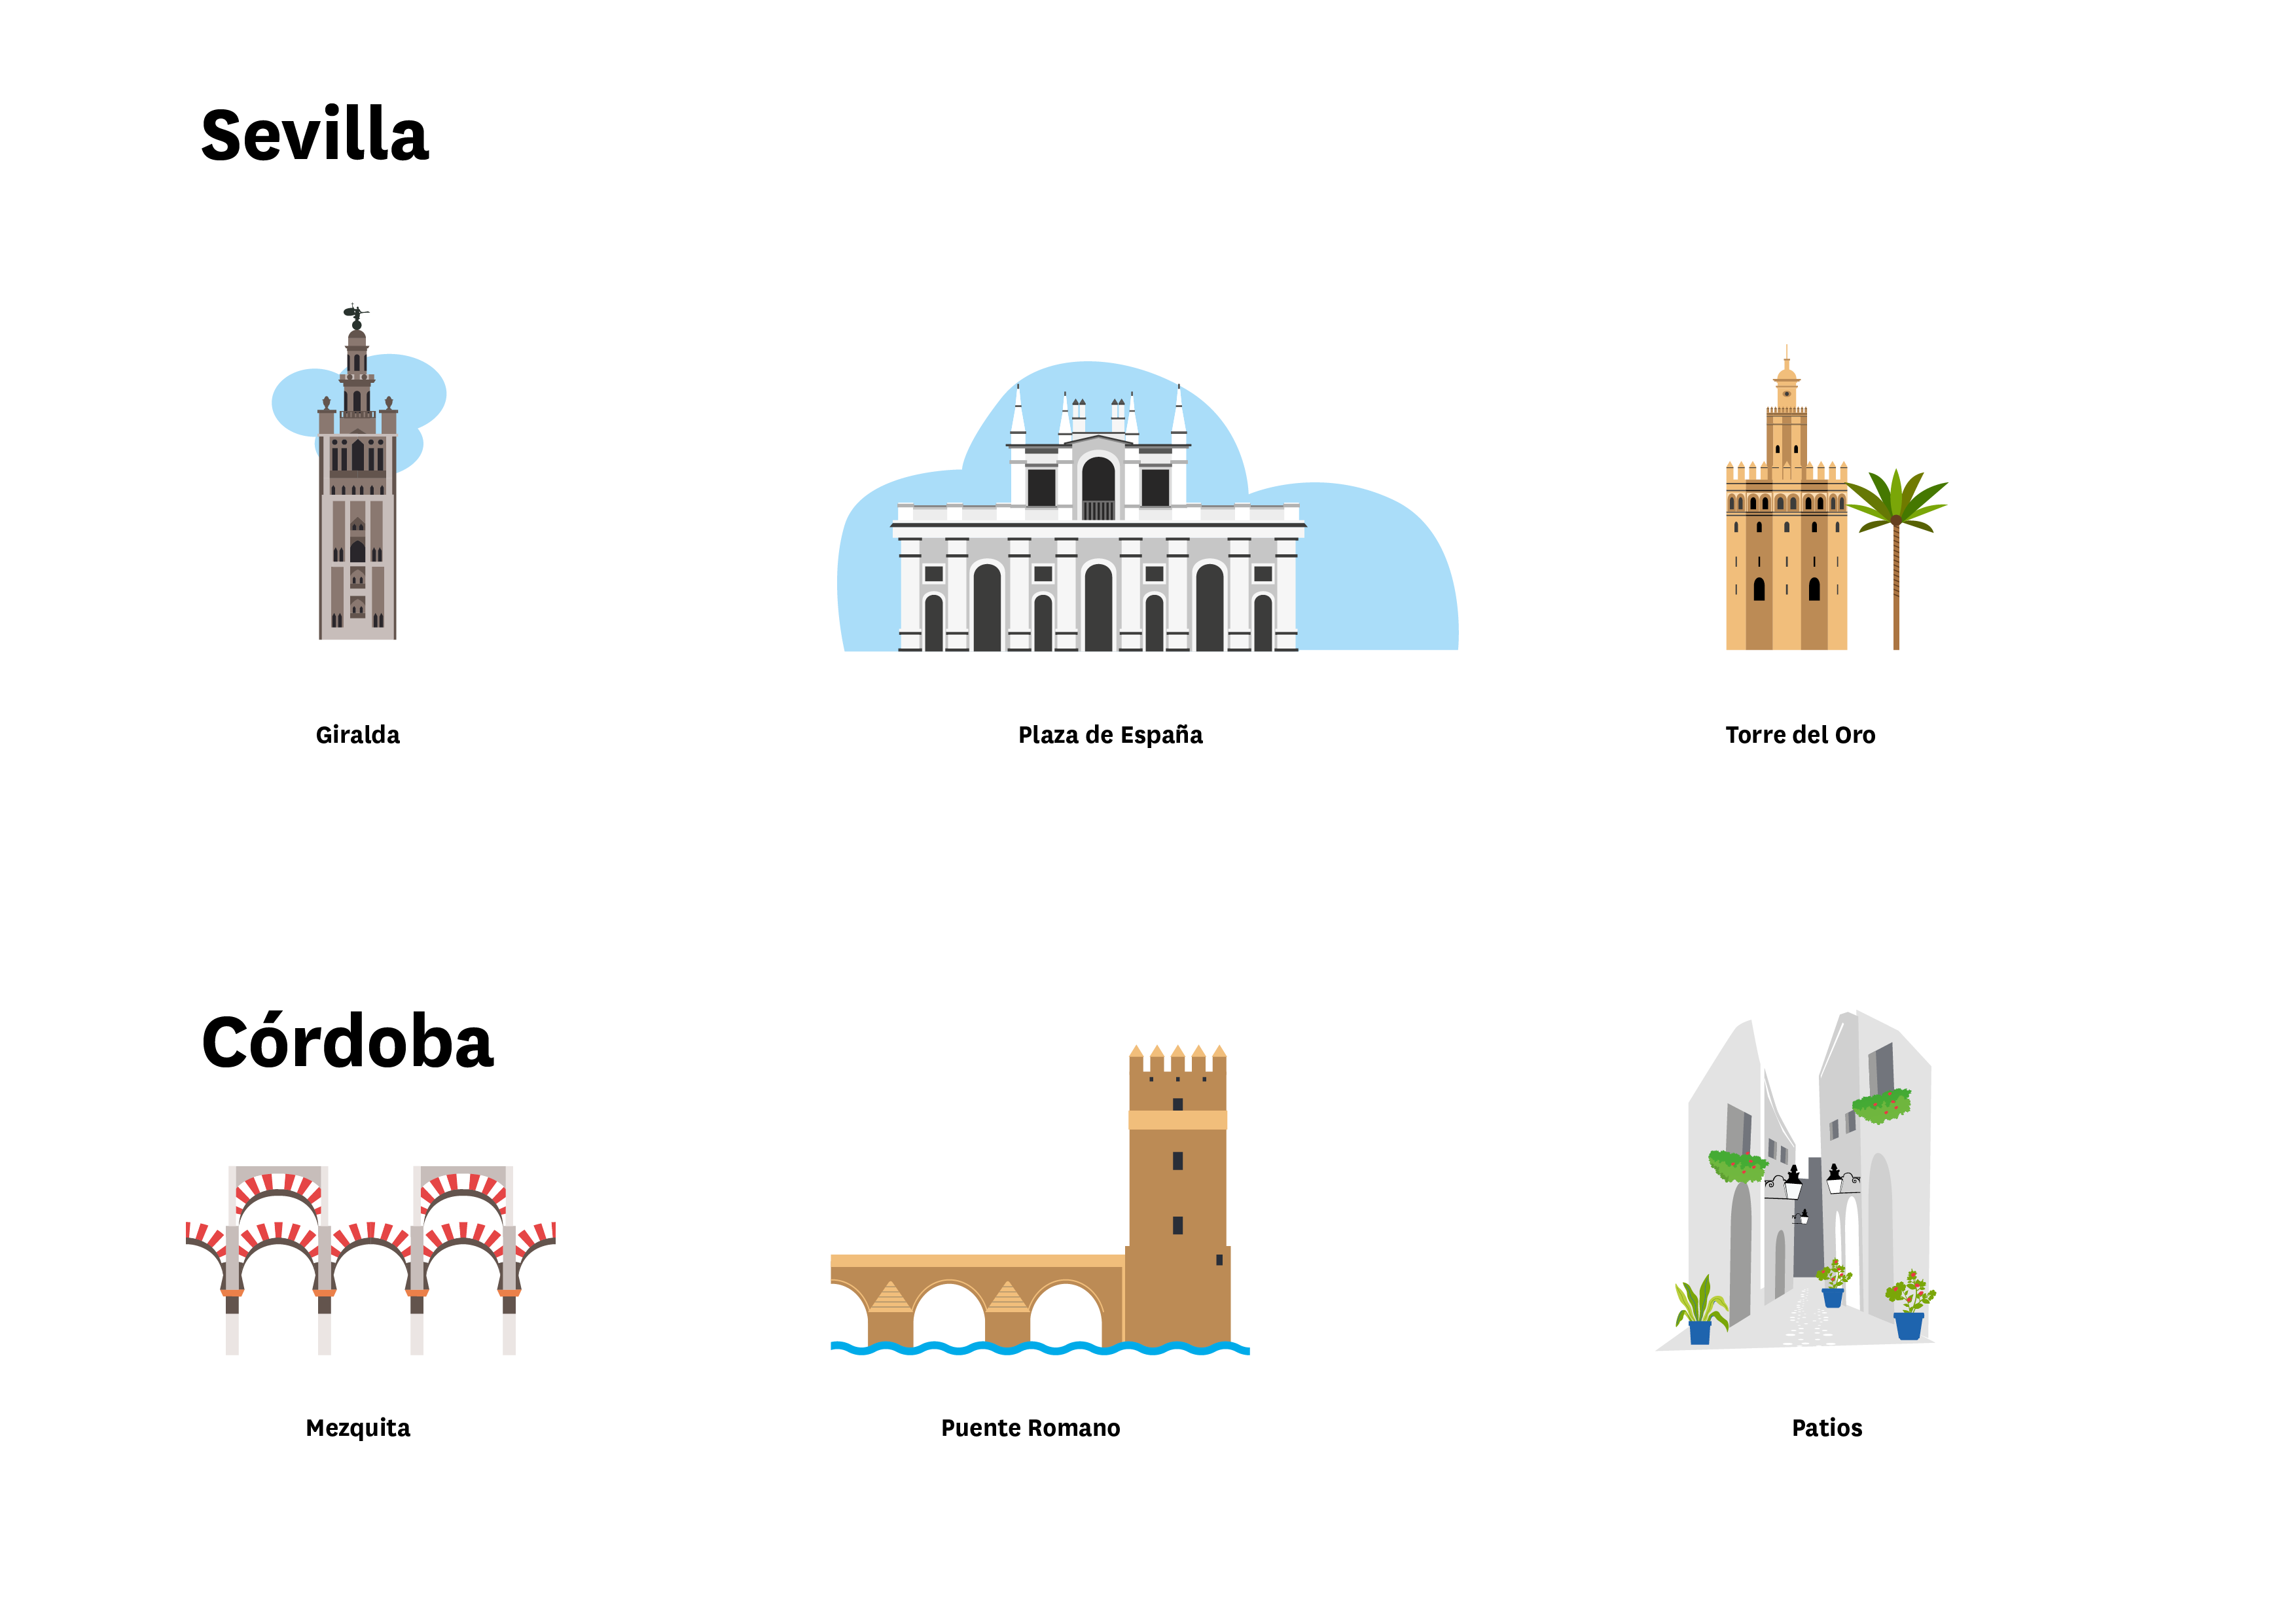 La imagen muestra localizaciones de Sevilla (La Giralda, Plaza de España y Torre del Oro) y Córdoba (La Mezquita, Puente Romano y Patios)